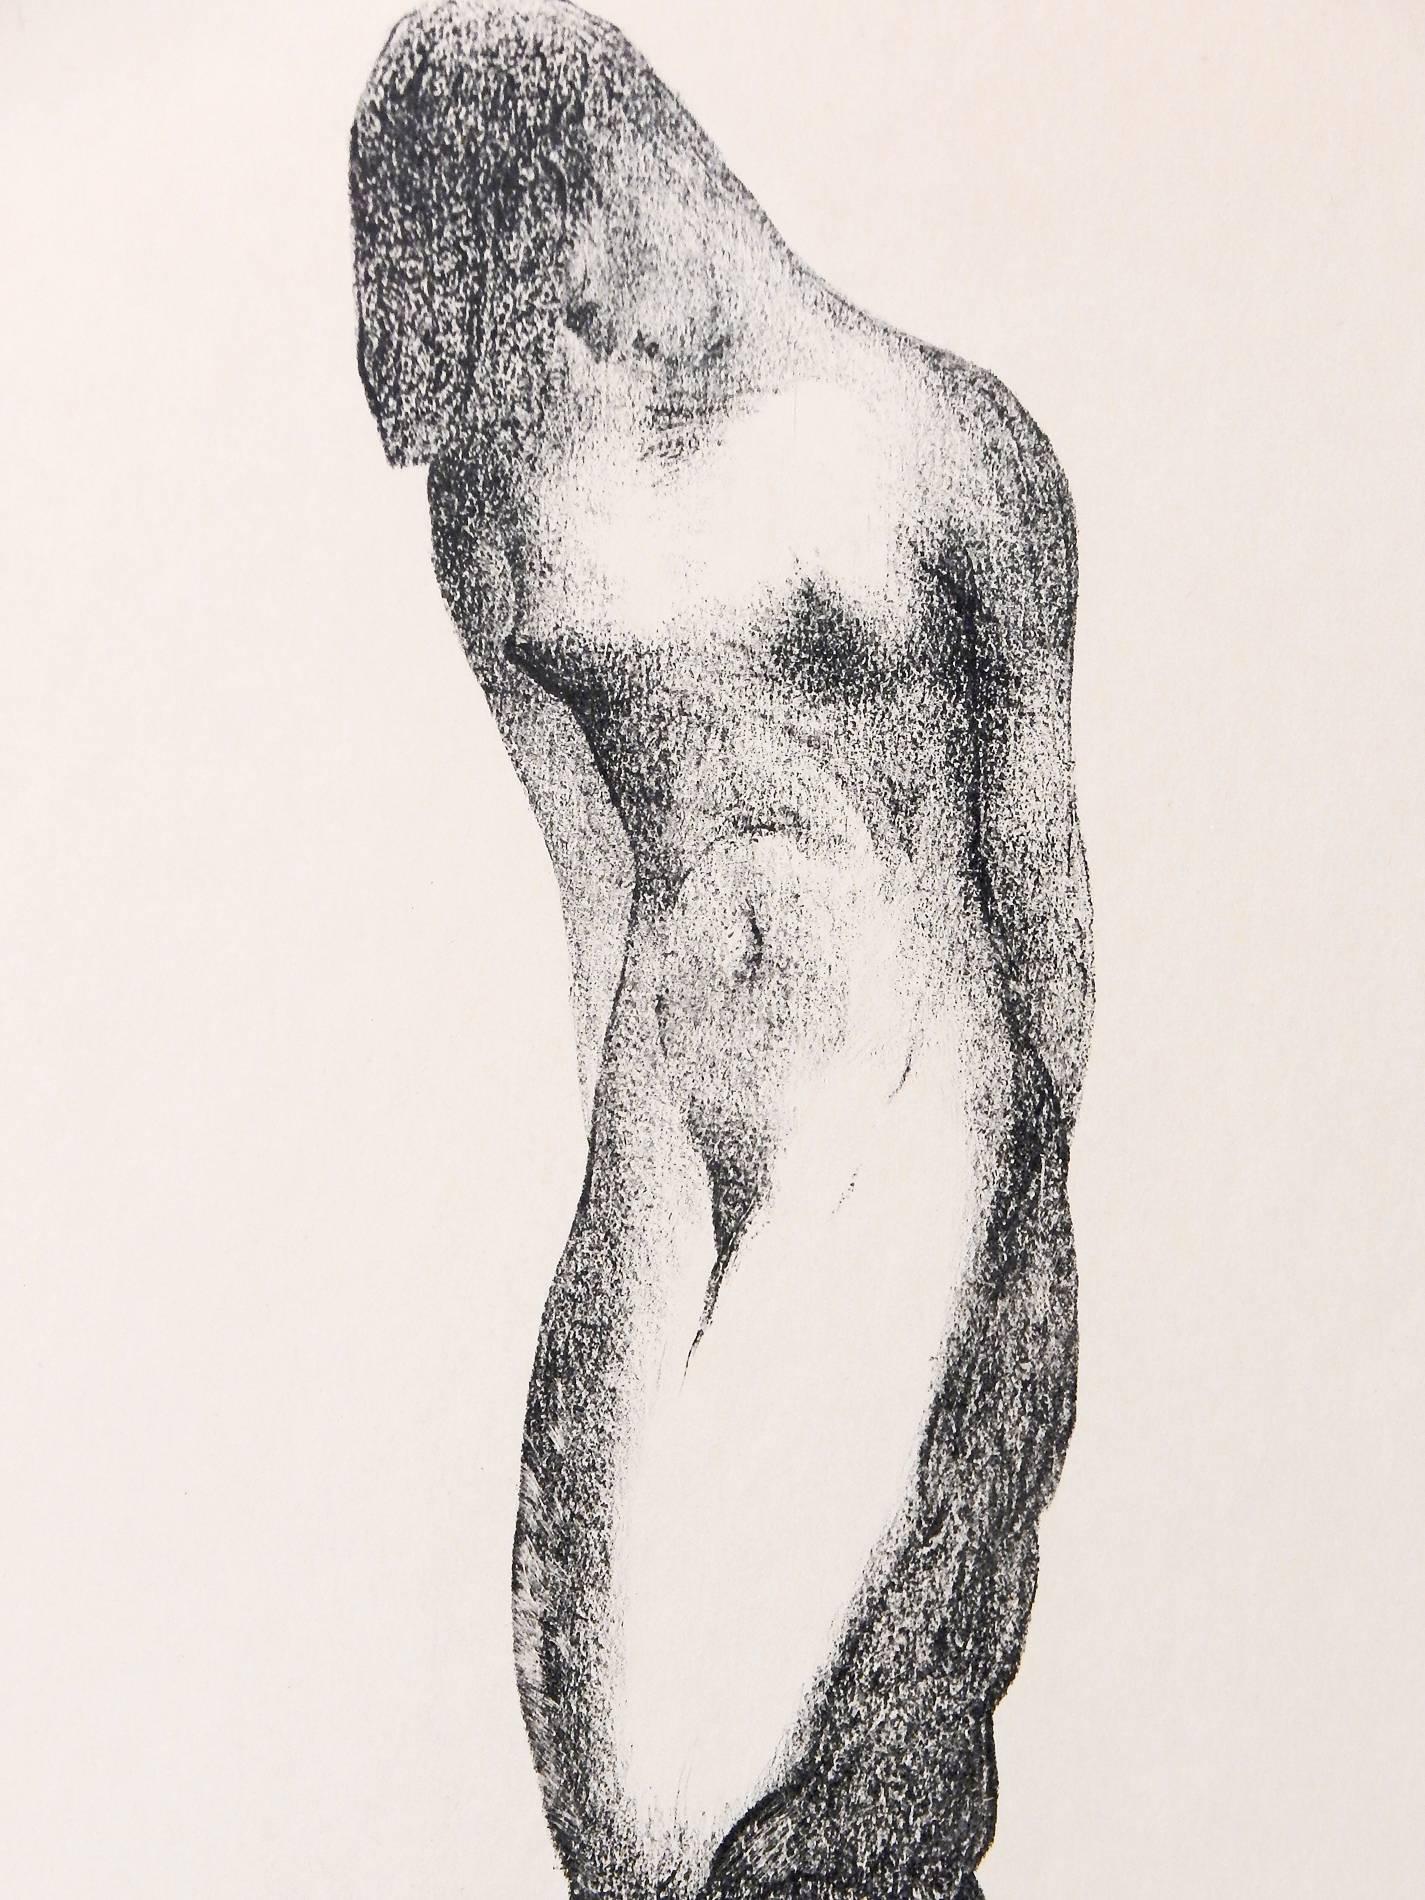 Sensuelle et sinueuse, cette gravure très rare d'un sculpteur américain représente une figure féminine nue enlacée par son amant masculin nu depuis le bas, l'homme servant de tronc à l'arbre féminin qui trône au-dessus. L'artiste, Alexander